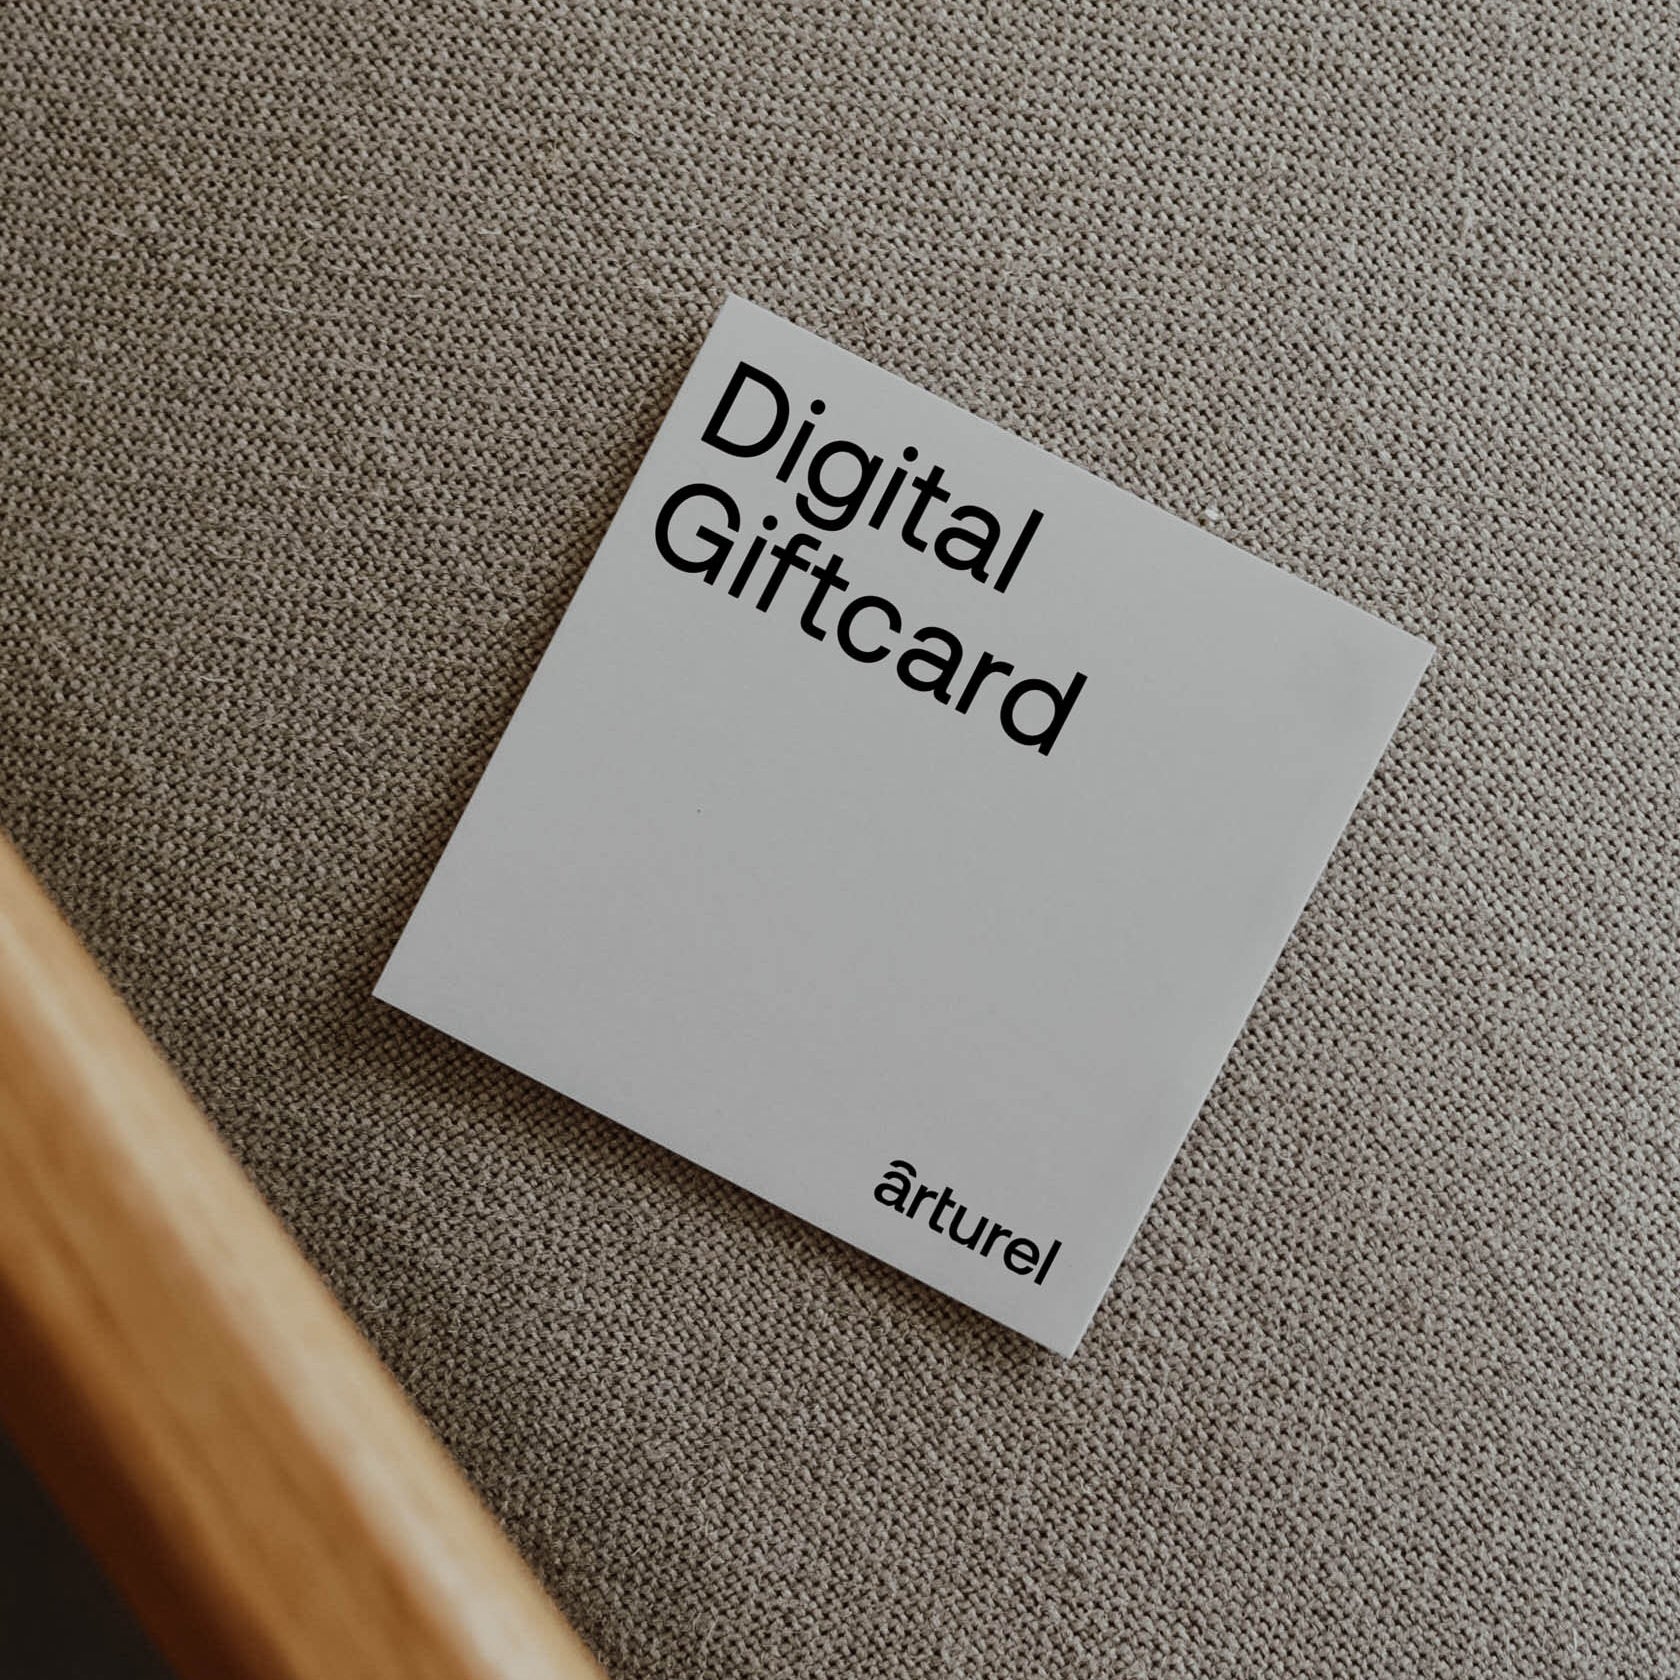 Digital Giftcard